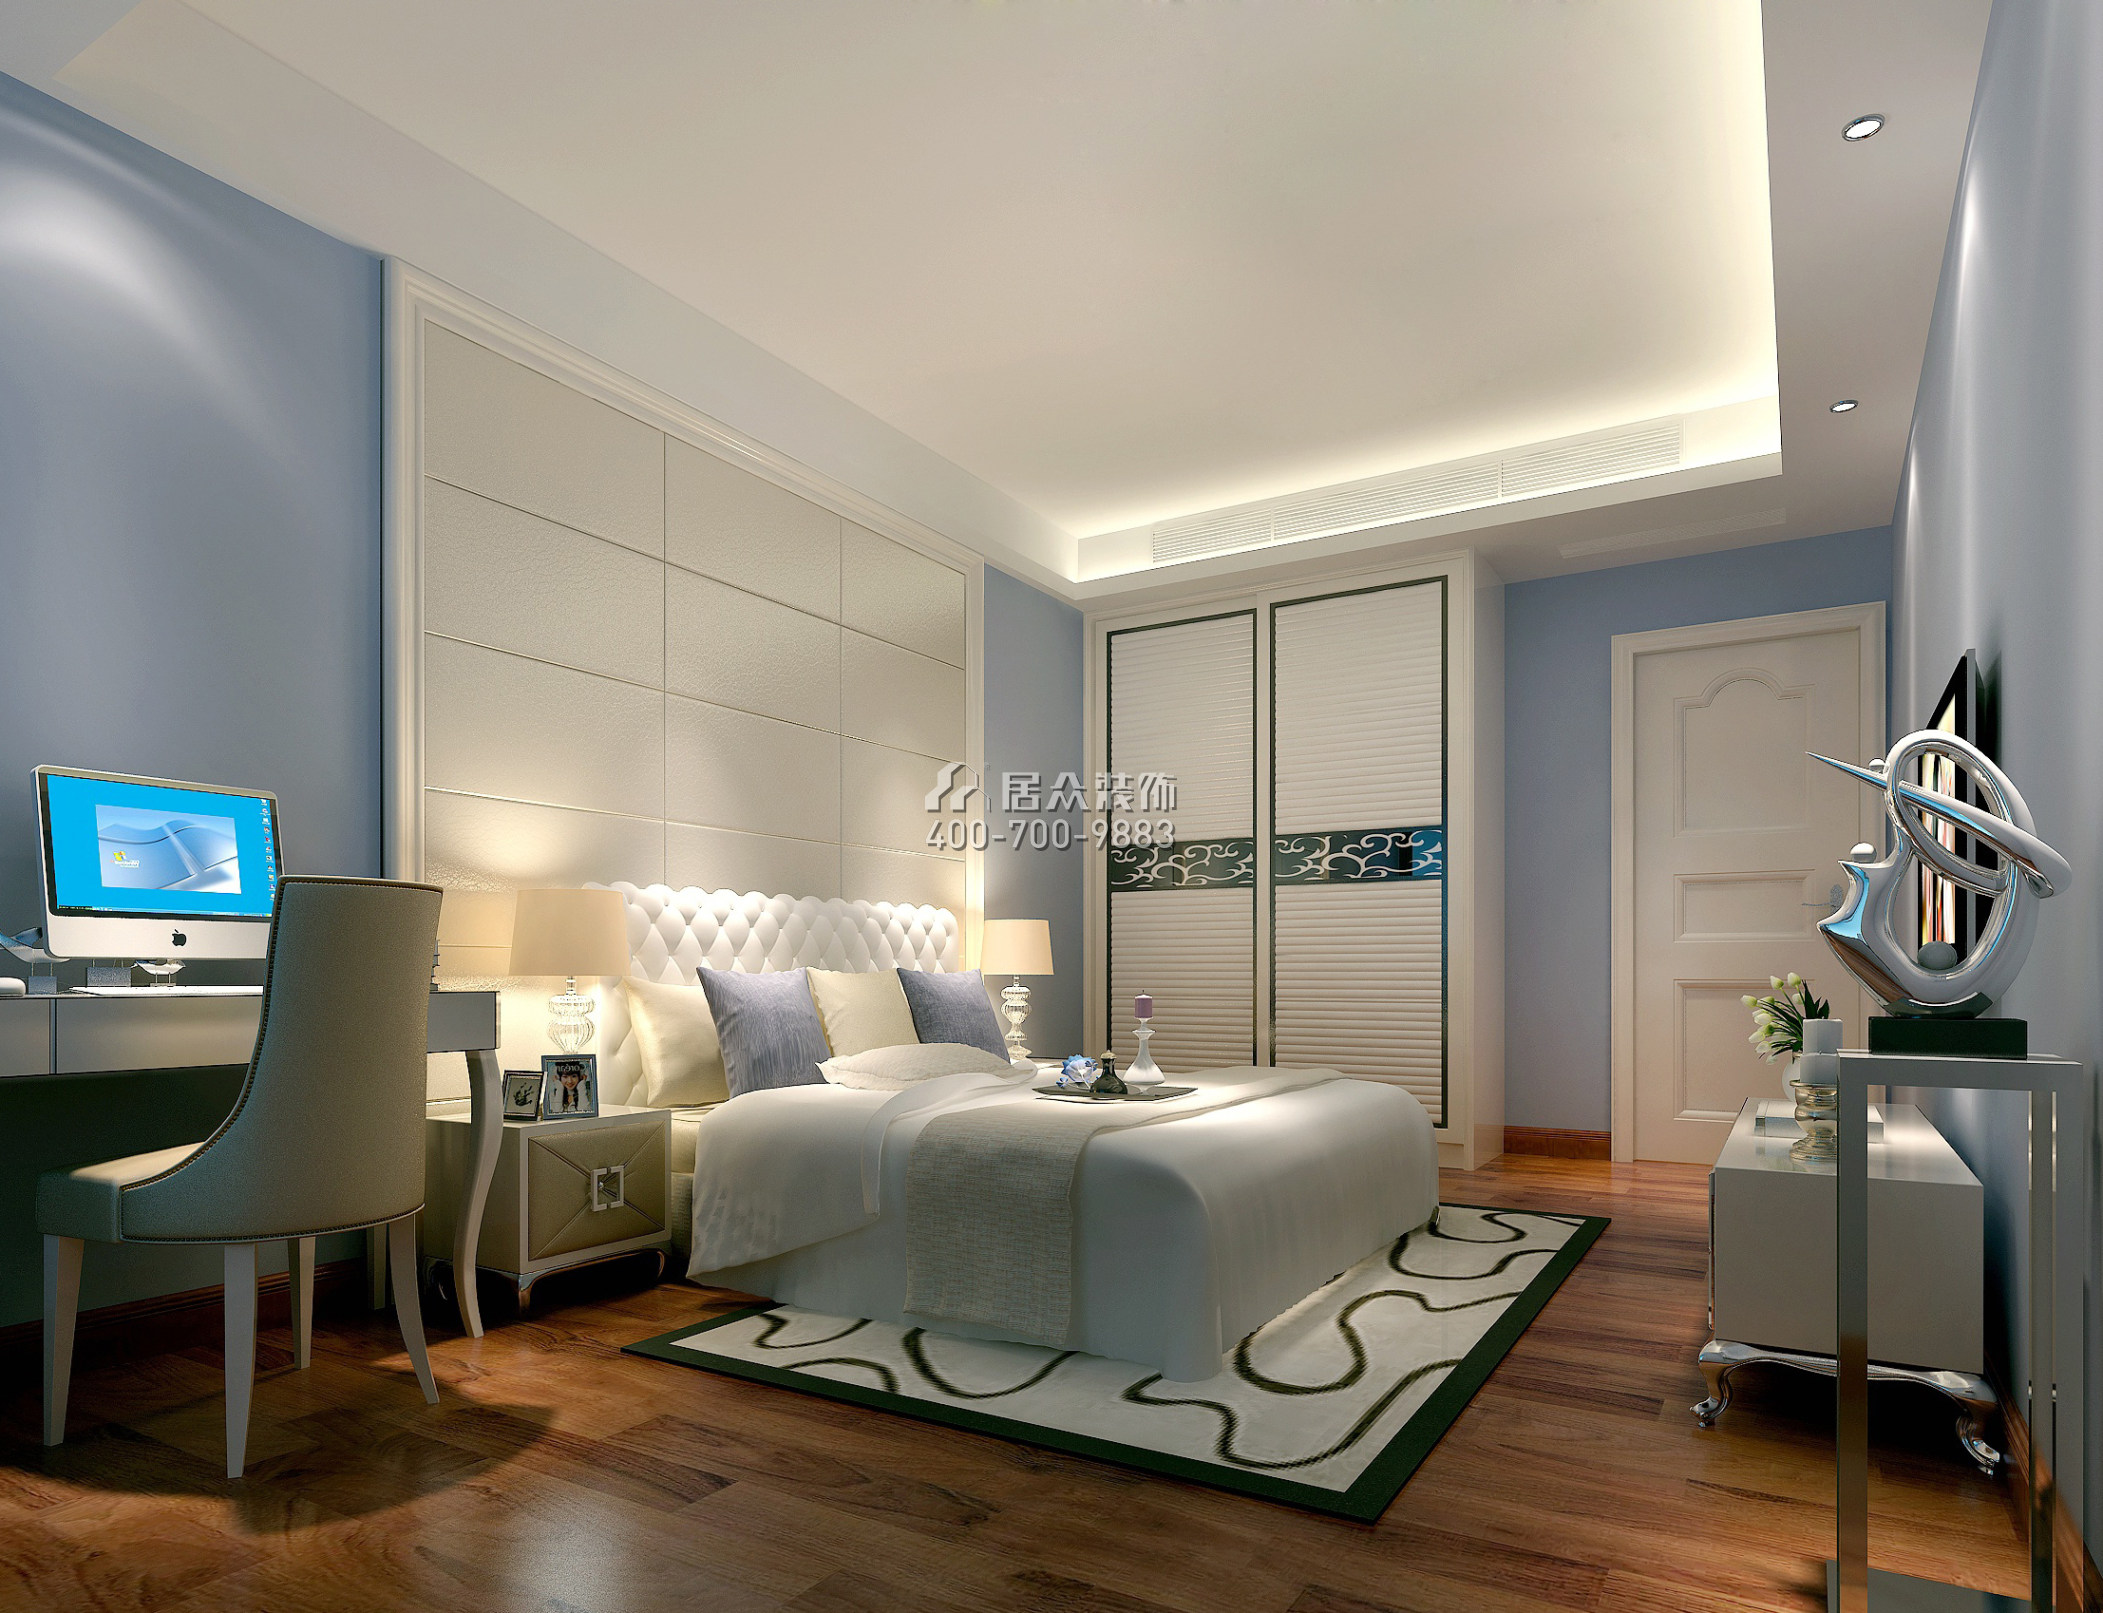 万科金域滨江180平方米现代简约风格平层户型卧室装修效果图